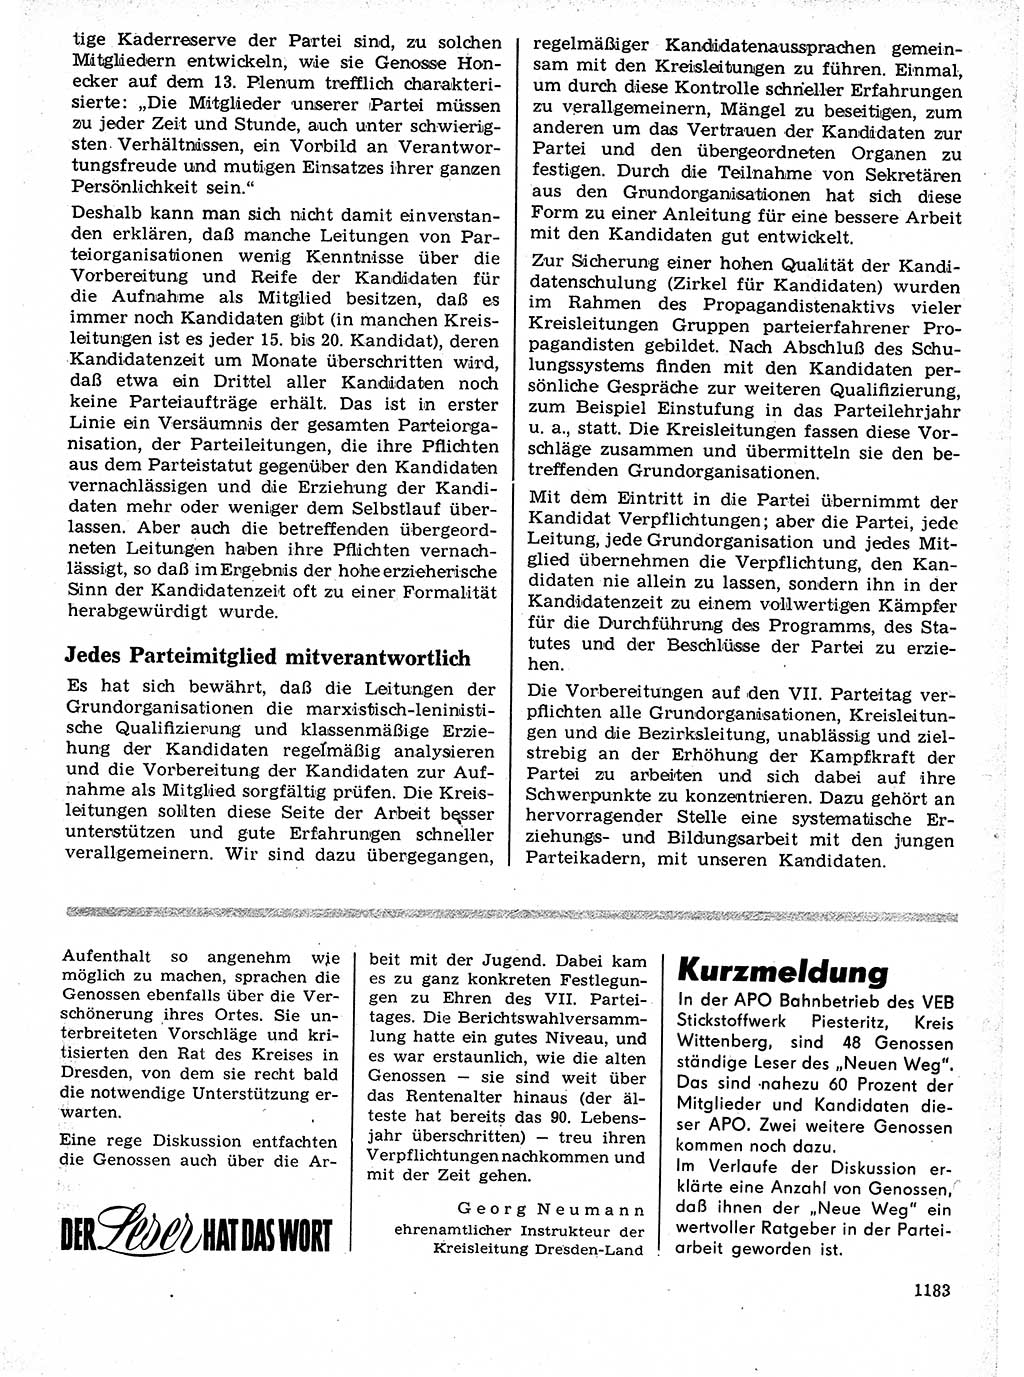 Neuer Weg (NW), Organ des Zentralkomitees (ZK) der SED (Sozialistische Einheitspartei Deutschlands) für Fragen des Parteilebens, 21. Jahrgang [Deutsche Demokratische Republik (DDR)] 1966, Seite 1183 (NW ZK SED DDR 1966, S. 1183)